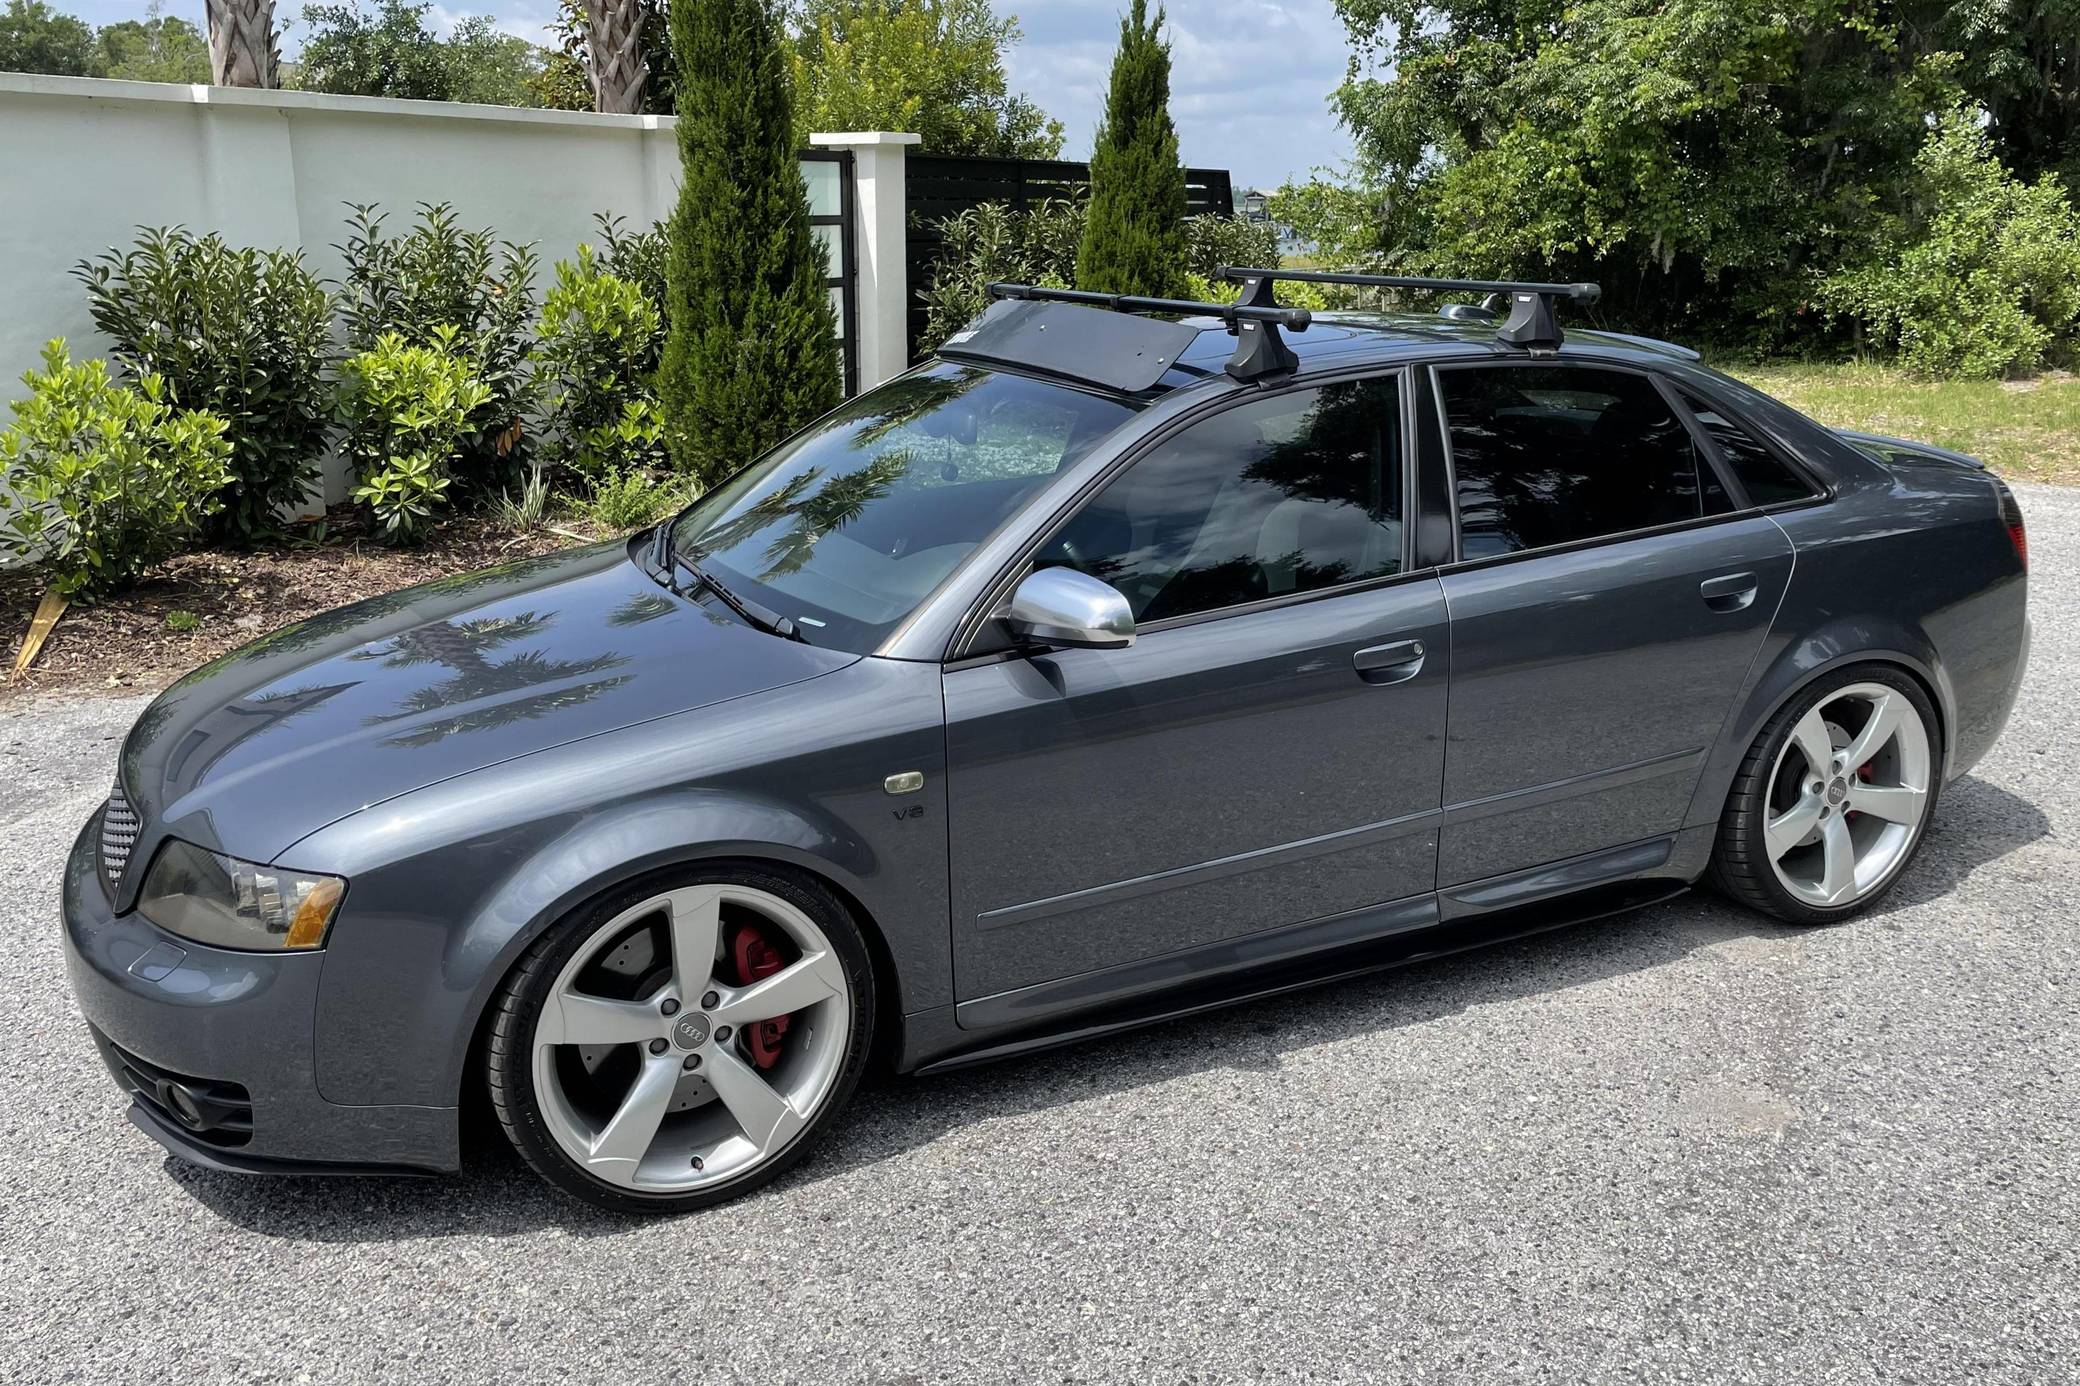 Buy Audi A4 B5 roof racks